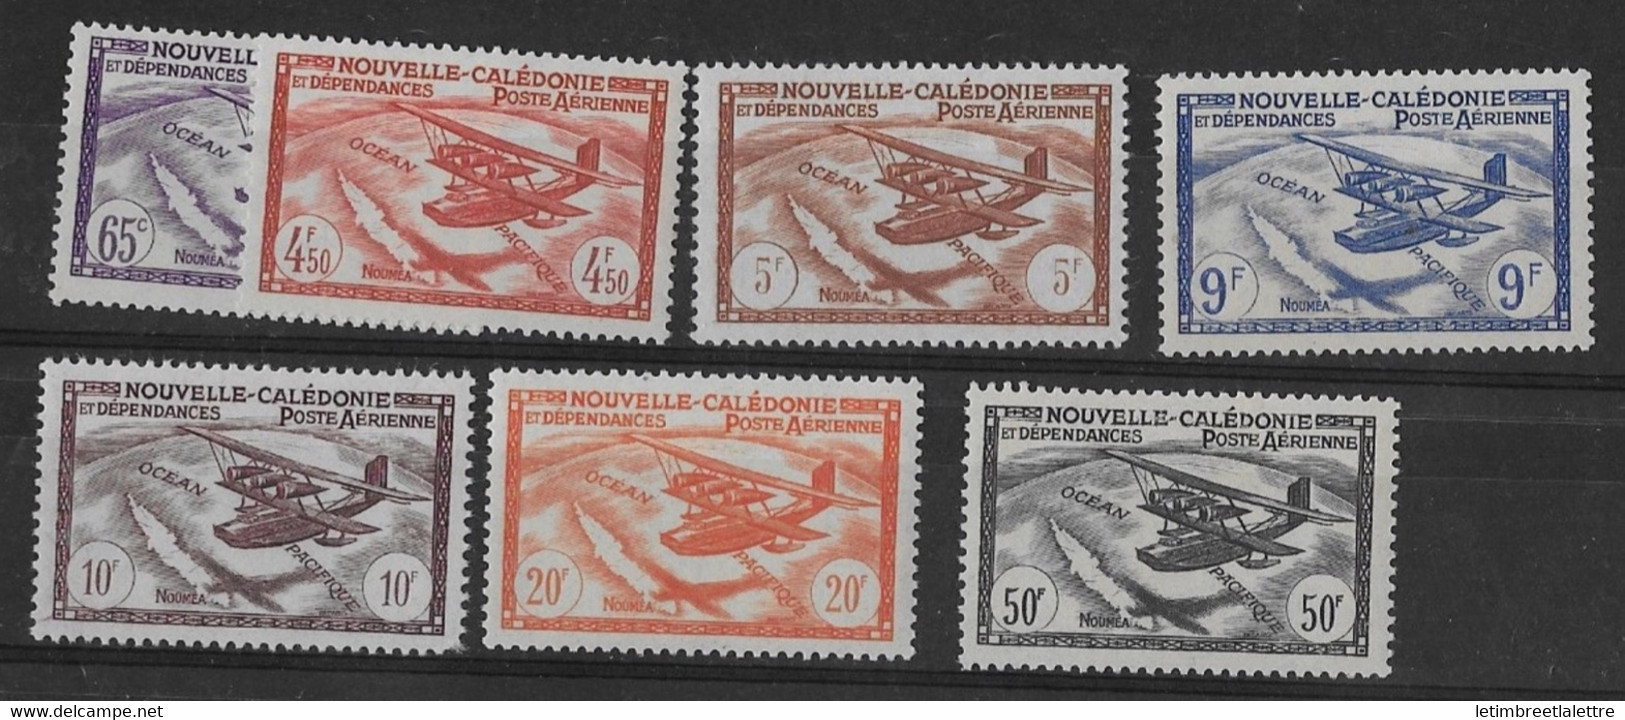 ⭐ Nouvelle Calédonie - Poste Aérienne - YT N° 39 à 45 ** - Neuf Sans Charnière - 1942 / 1943 ⭐ - Nuevos